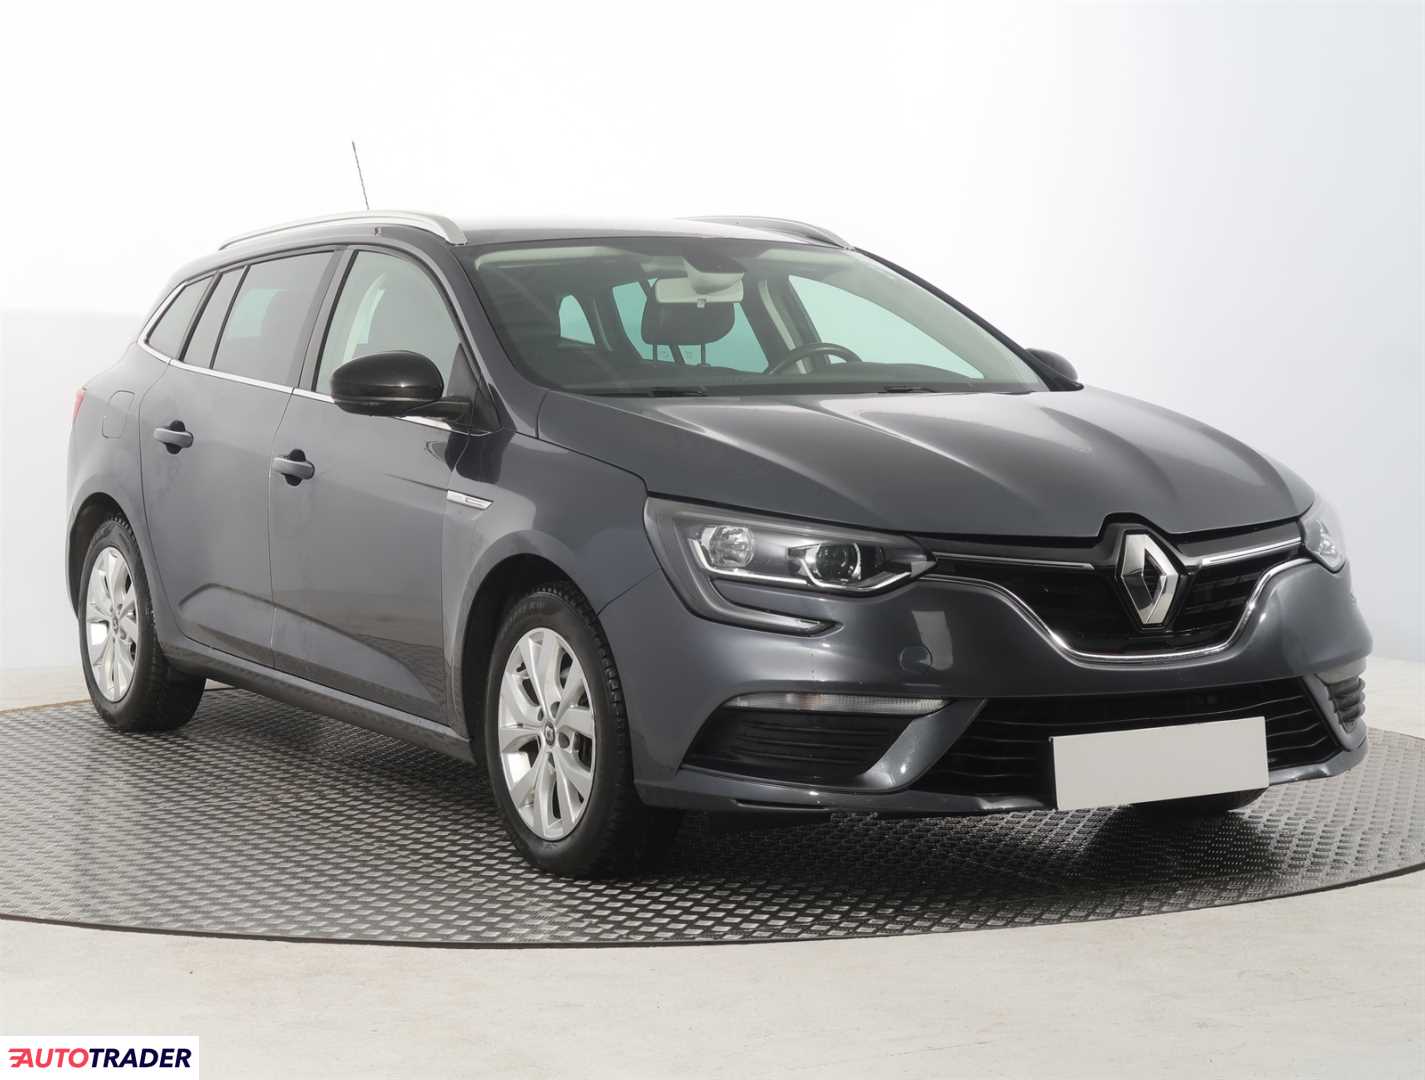 Renault Megane 2020 1.5 113 KM